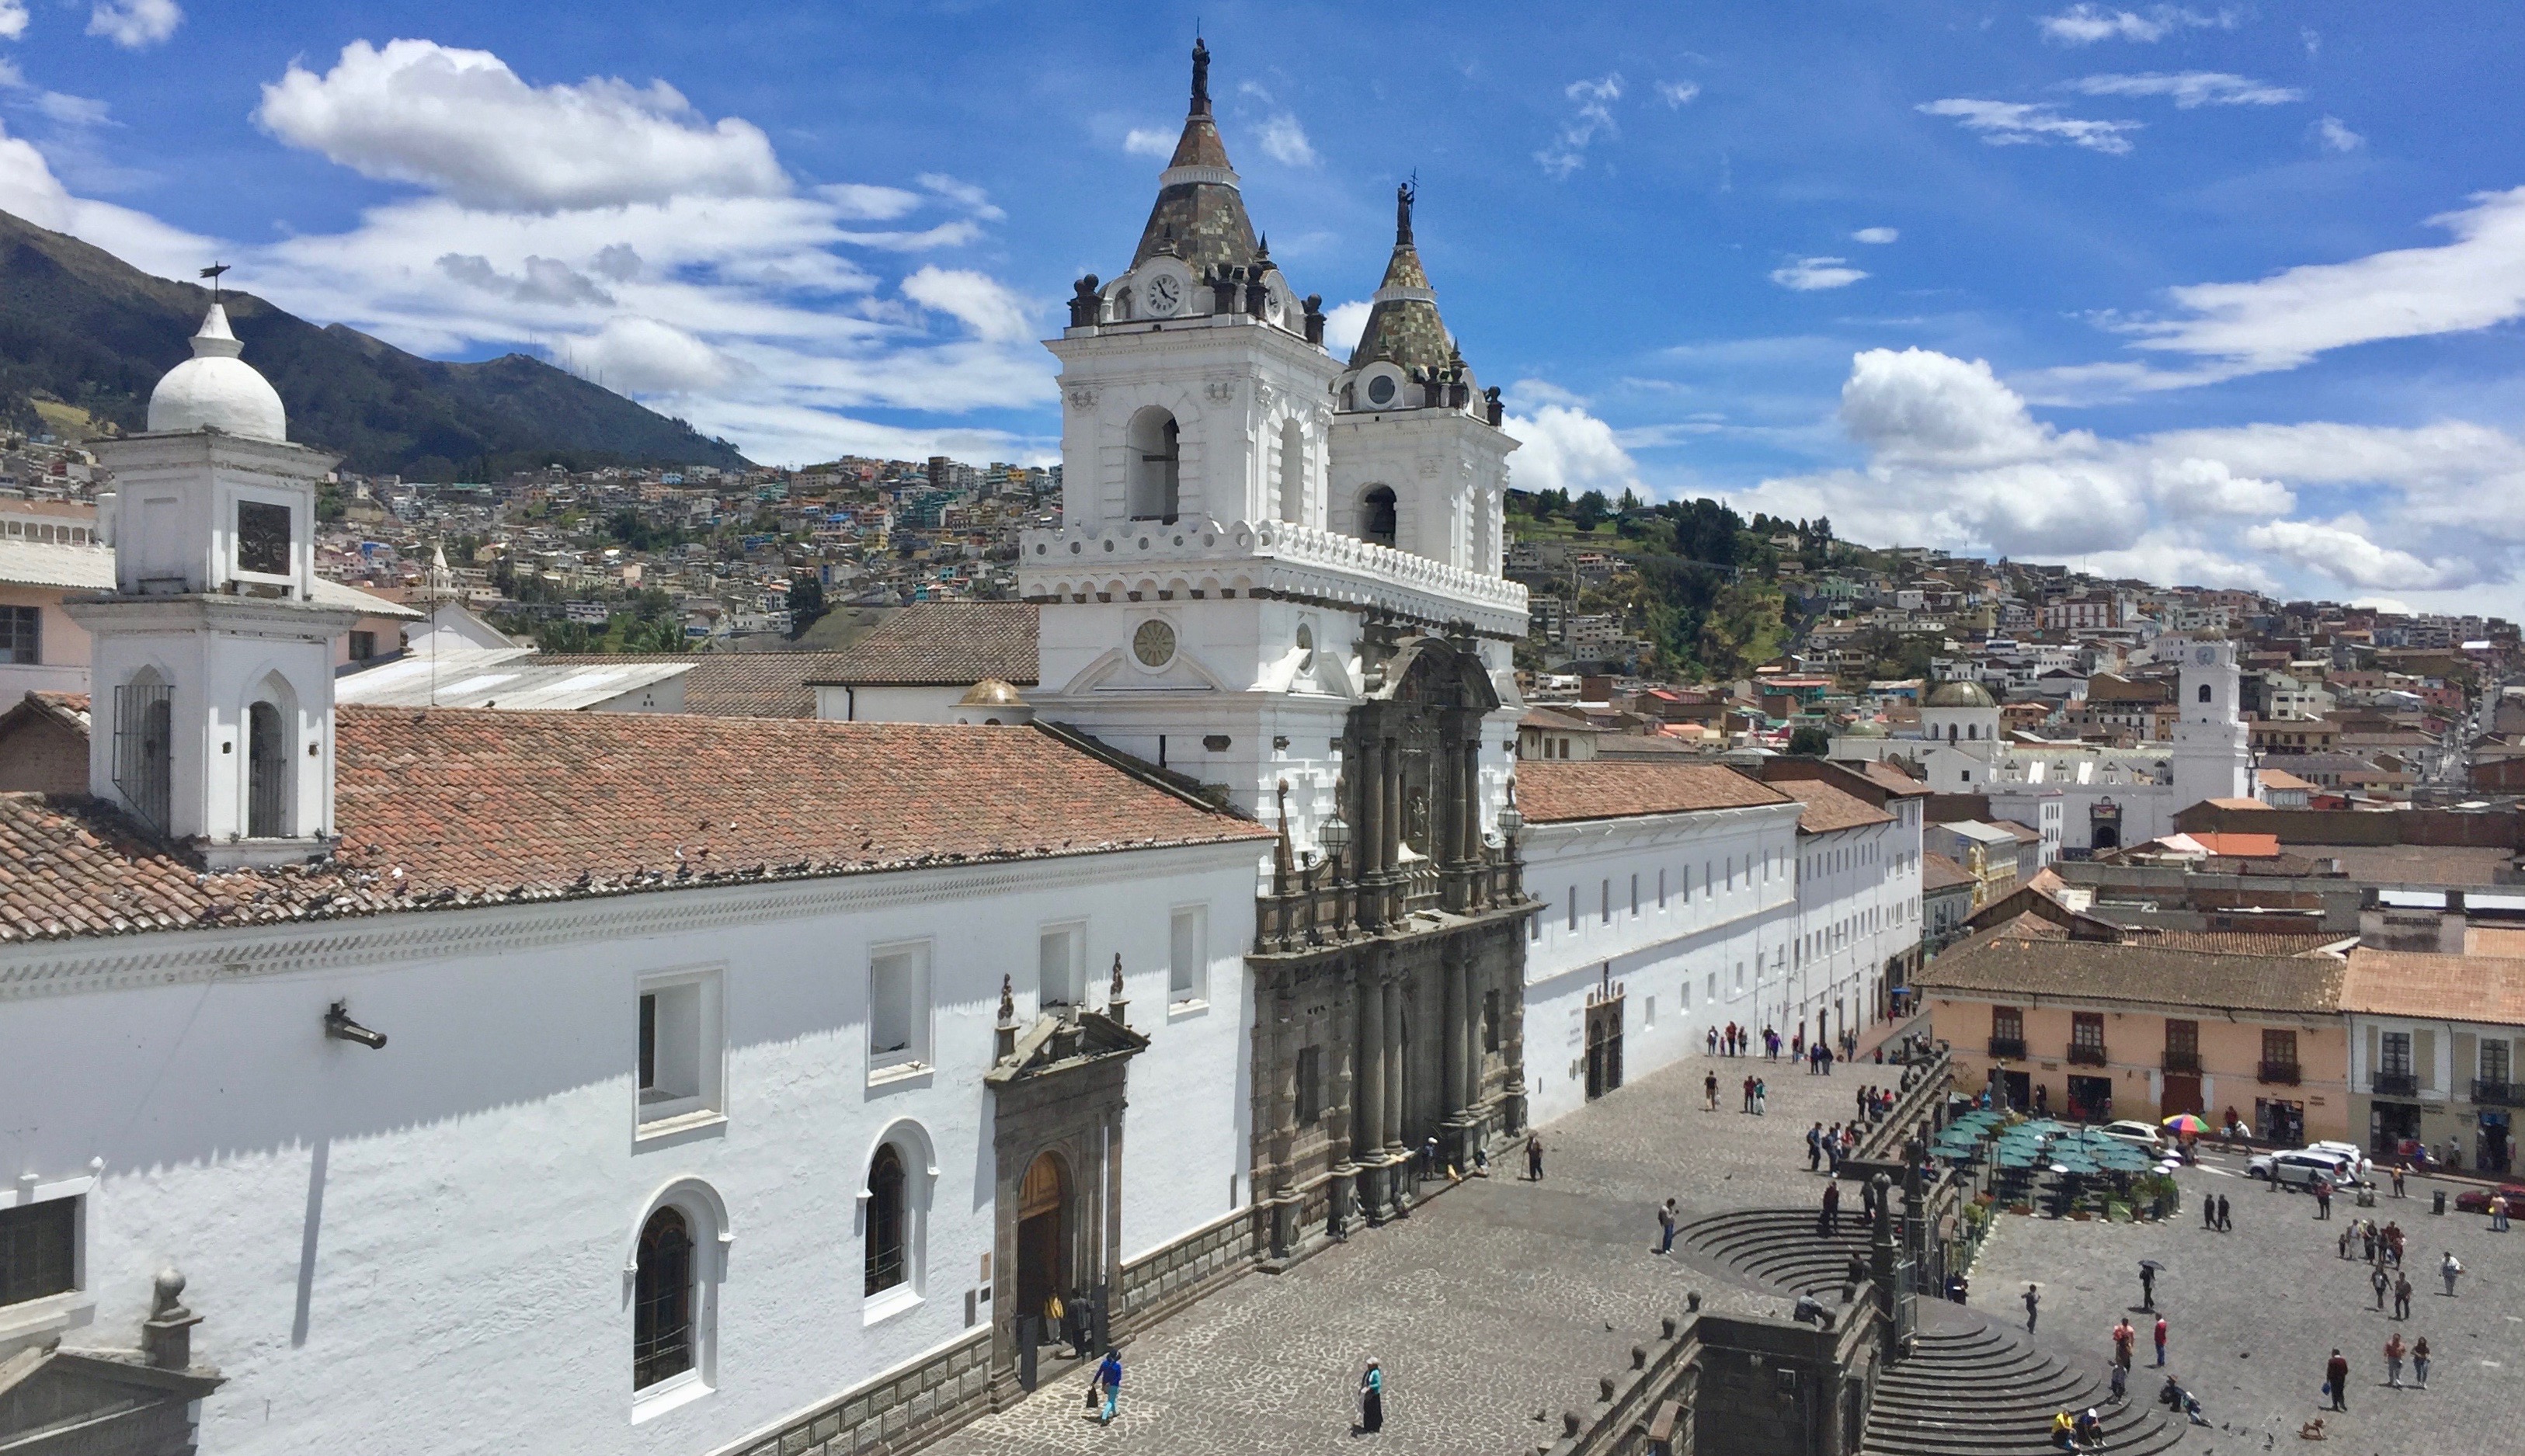 San Francisco Church and Plaza, Quito, Ecuador